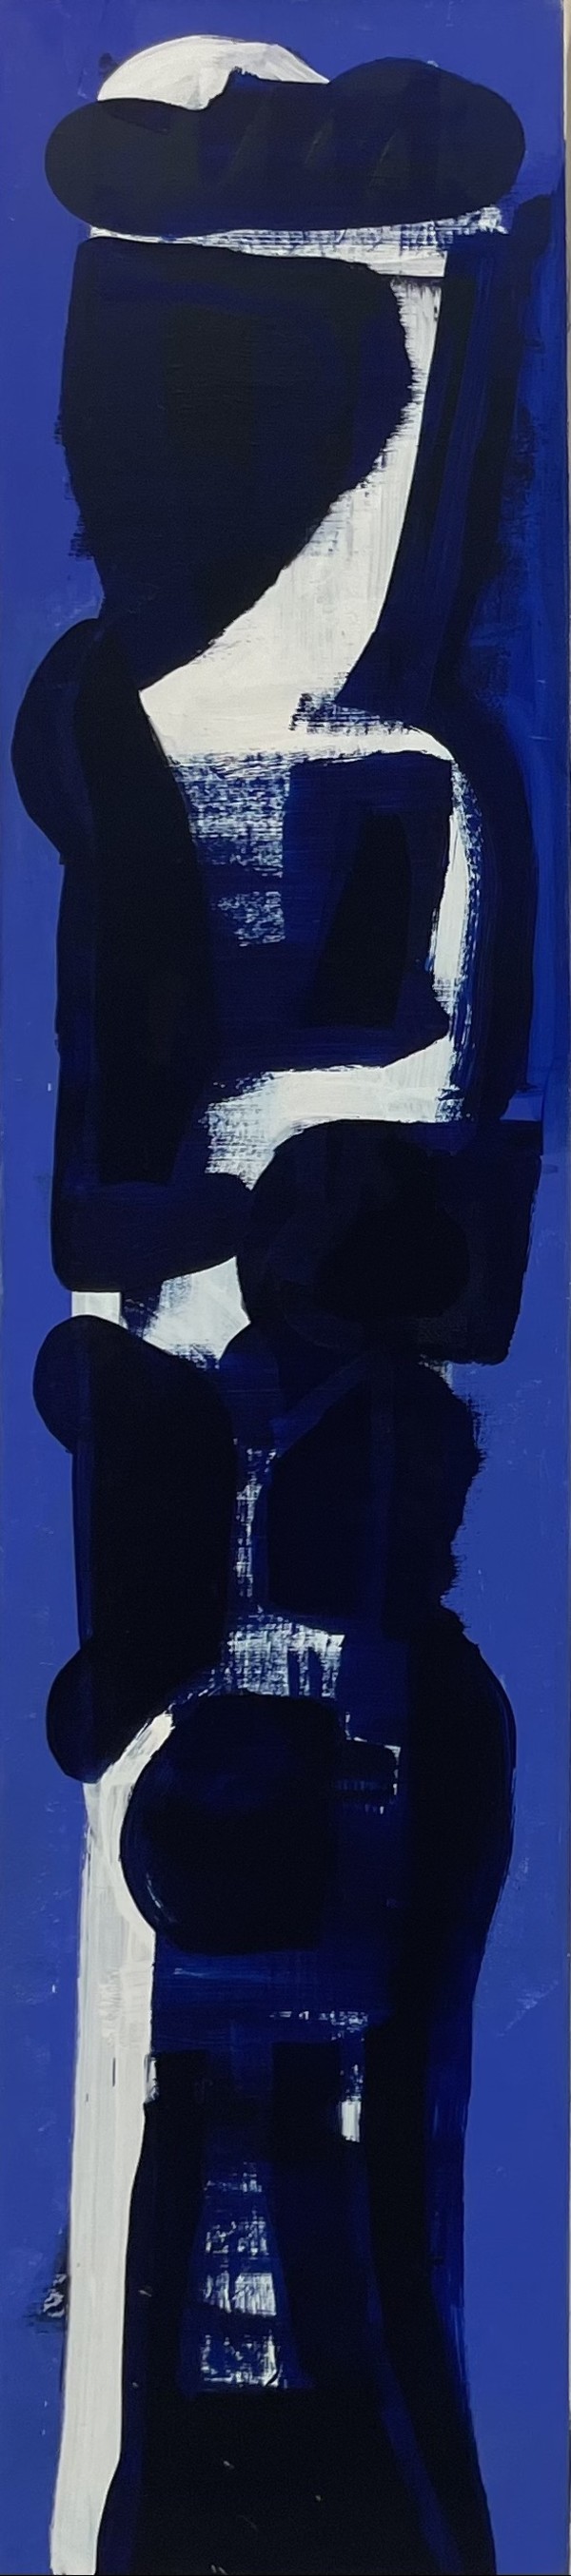 Blue Boy by Keiko González